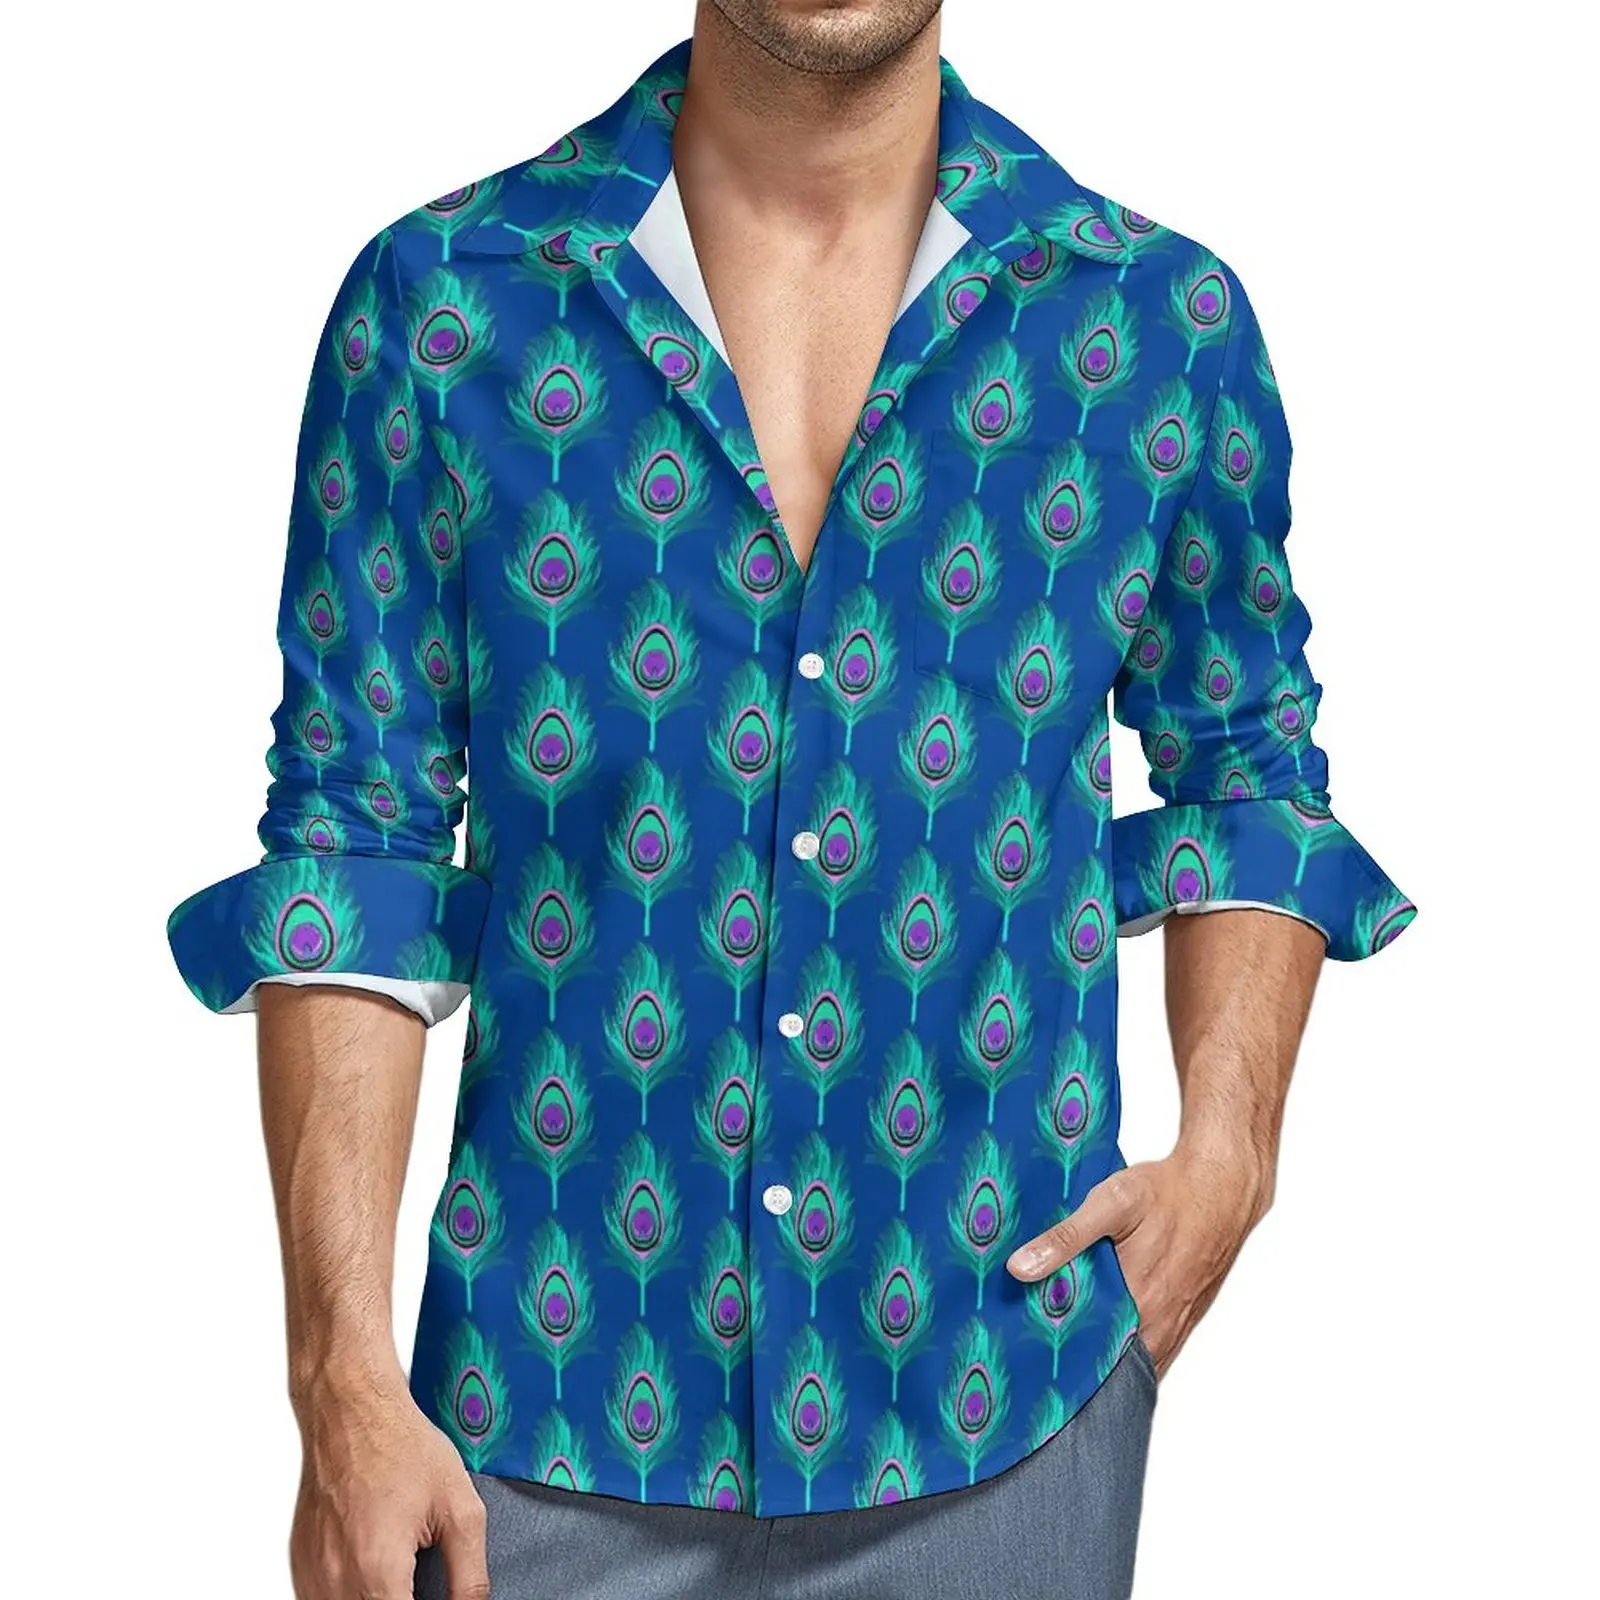 

Рубашка мужская с принтом синего павлина и перьев, Повседневная Блузка с графическим принтом, модный топ оверсайз с длинным рукавом, в уличном стиле, на весну